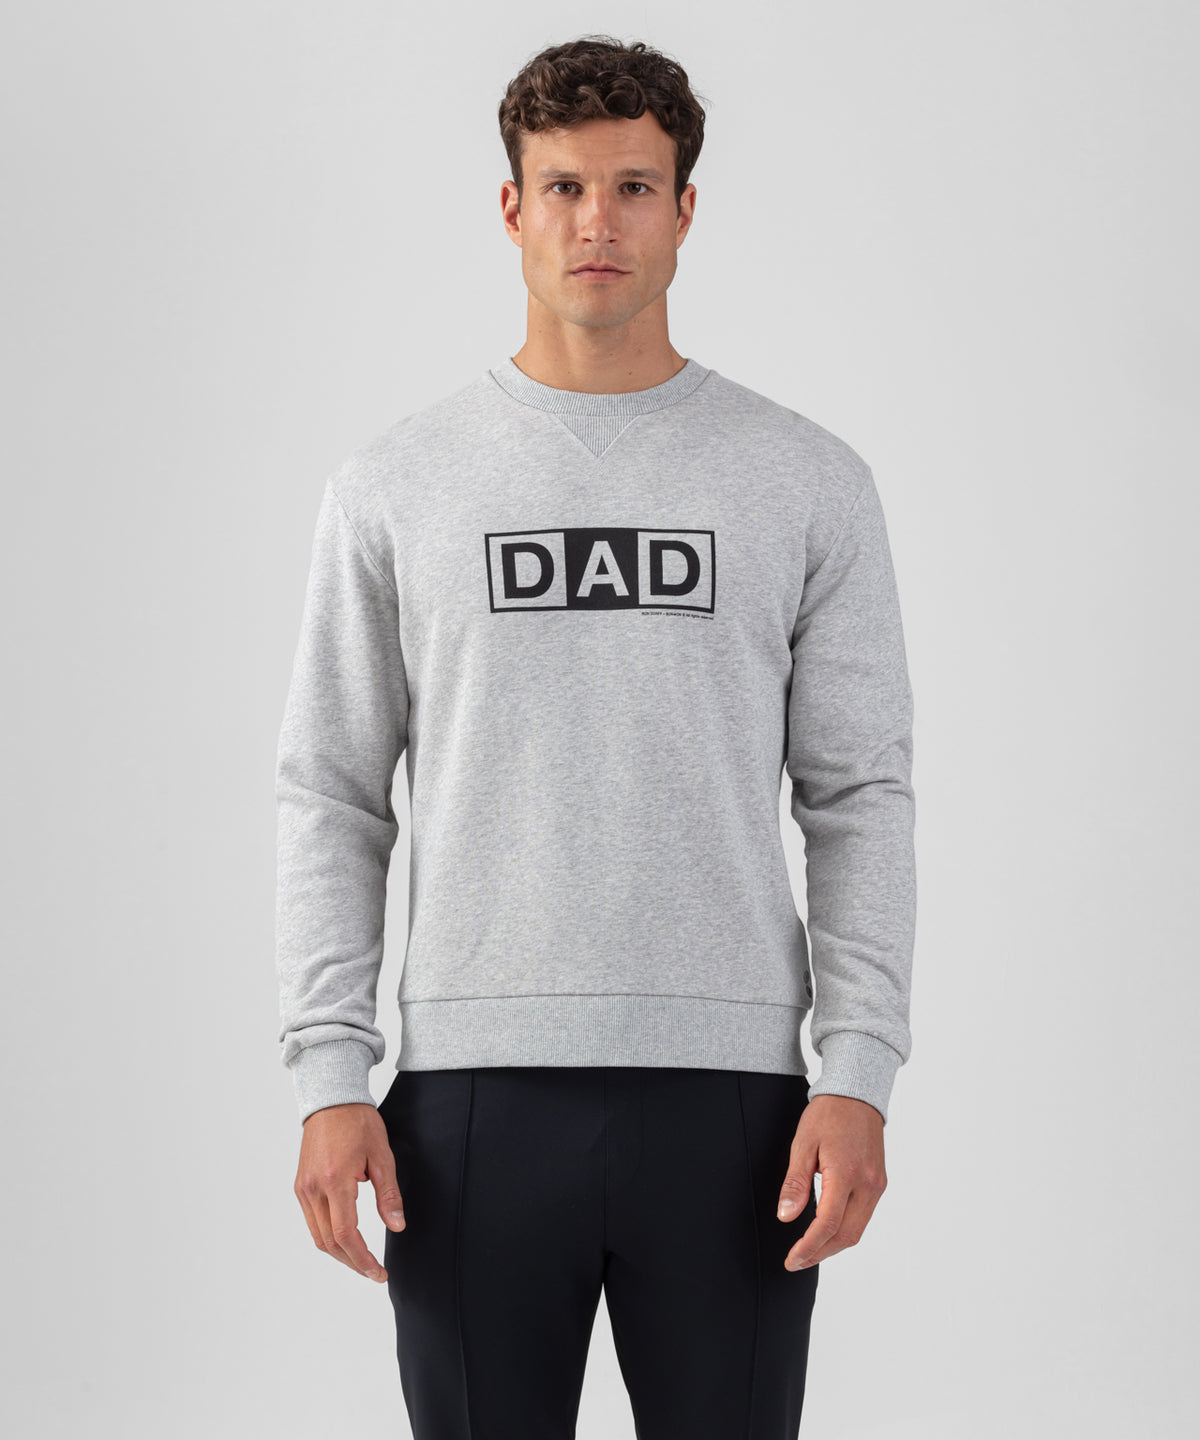 RON DORFF + BONTON Sweatshirt en coton organique à imprimé DAD: Gris chiné